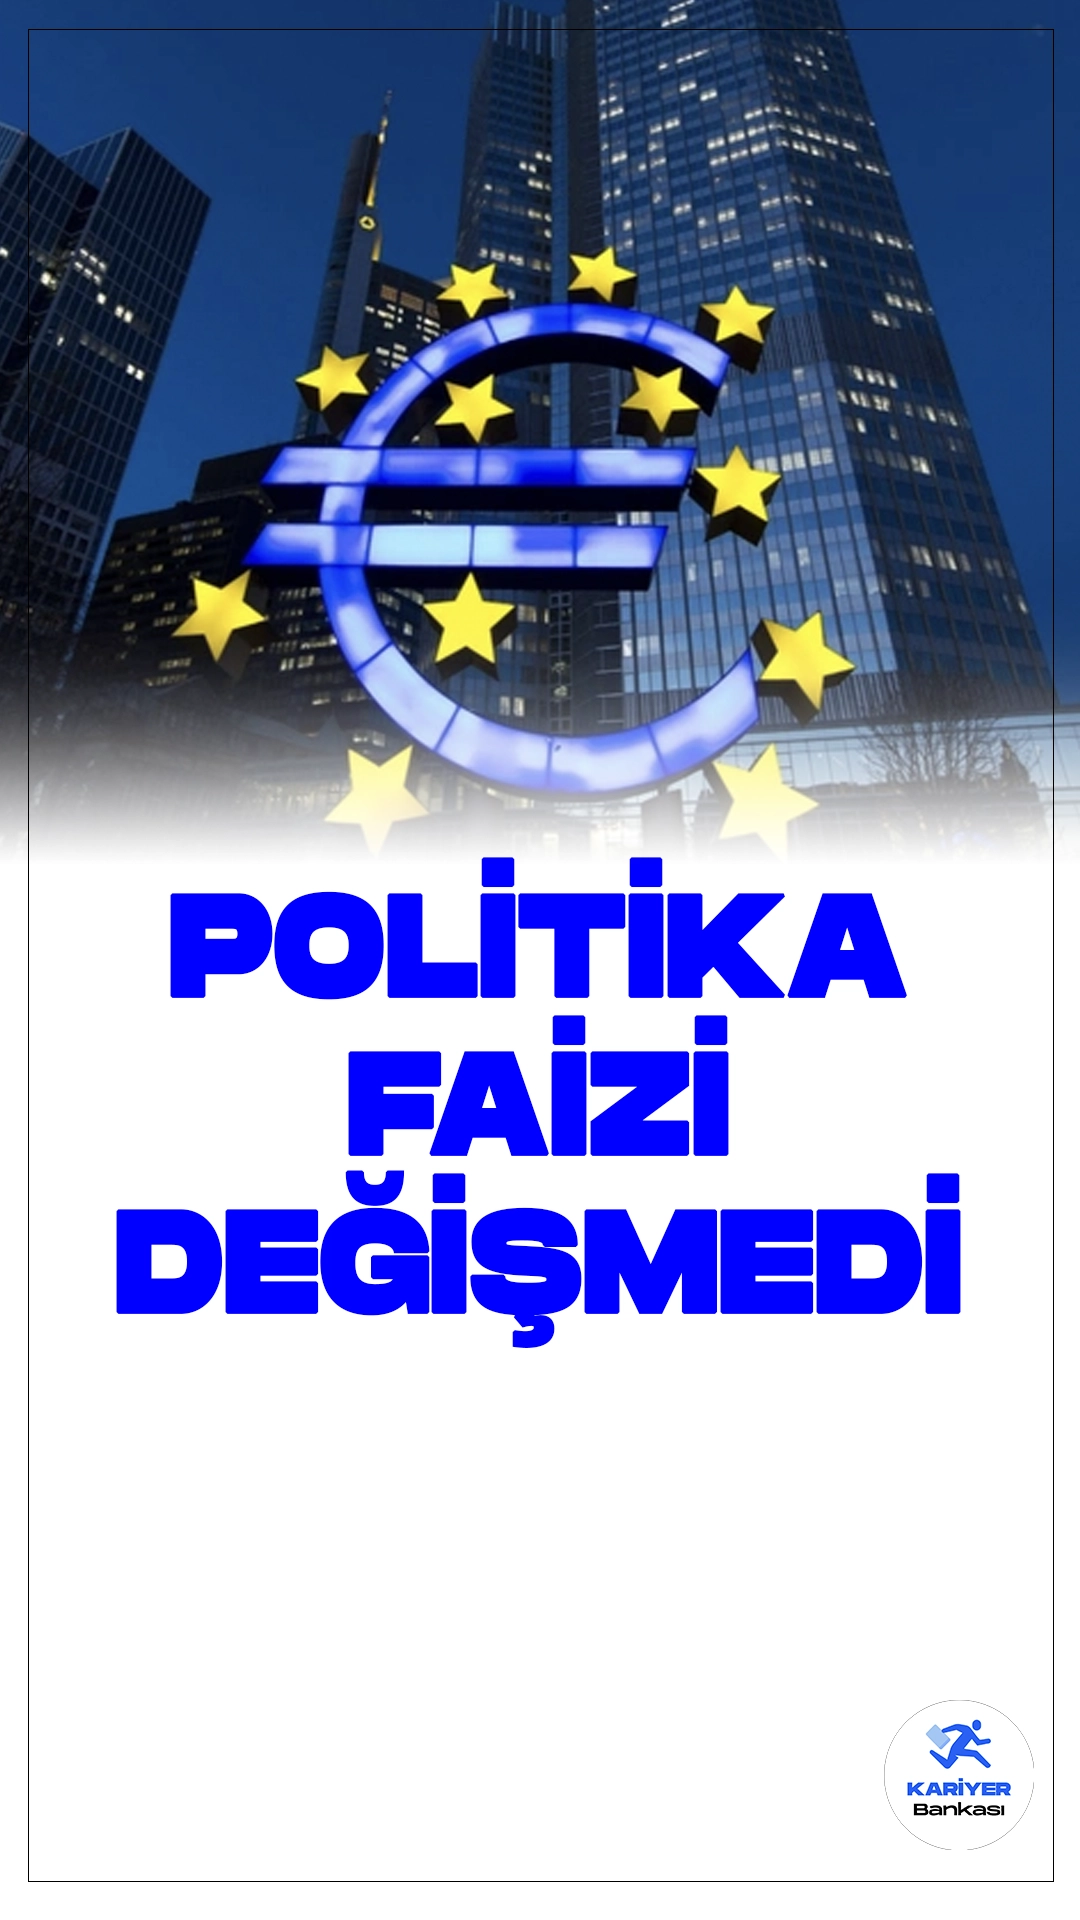 Avrupa Merkez Bankası 3 Temel Politika Faizinde Değişiklik Yapmadı.Avrupa Merkez Bankası (ECB), piyasa beklentilerine paralel olarak 3 temel politika faizini değiştirmeme kararı aldı.